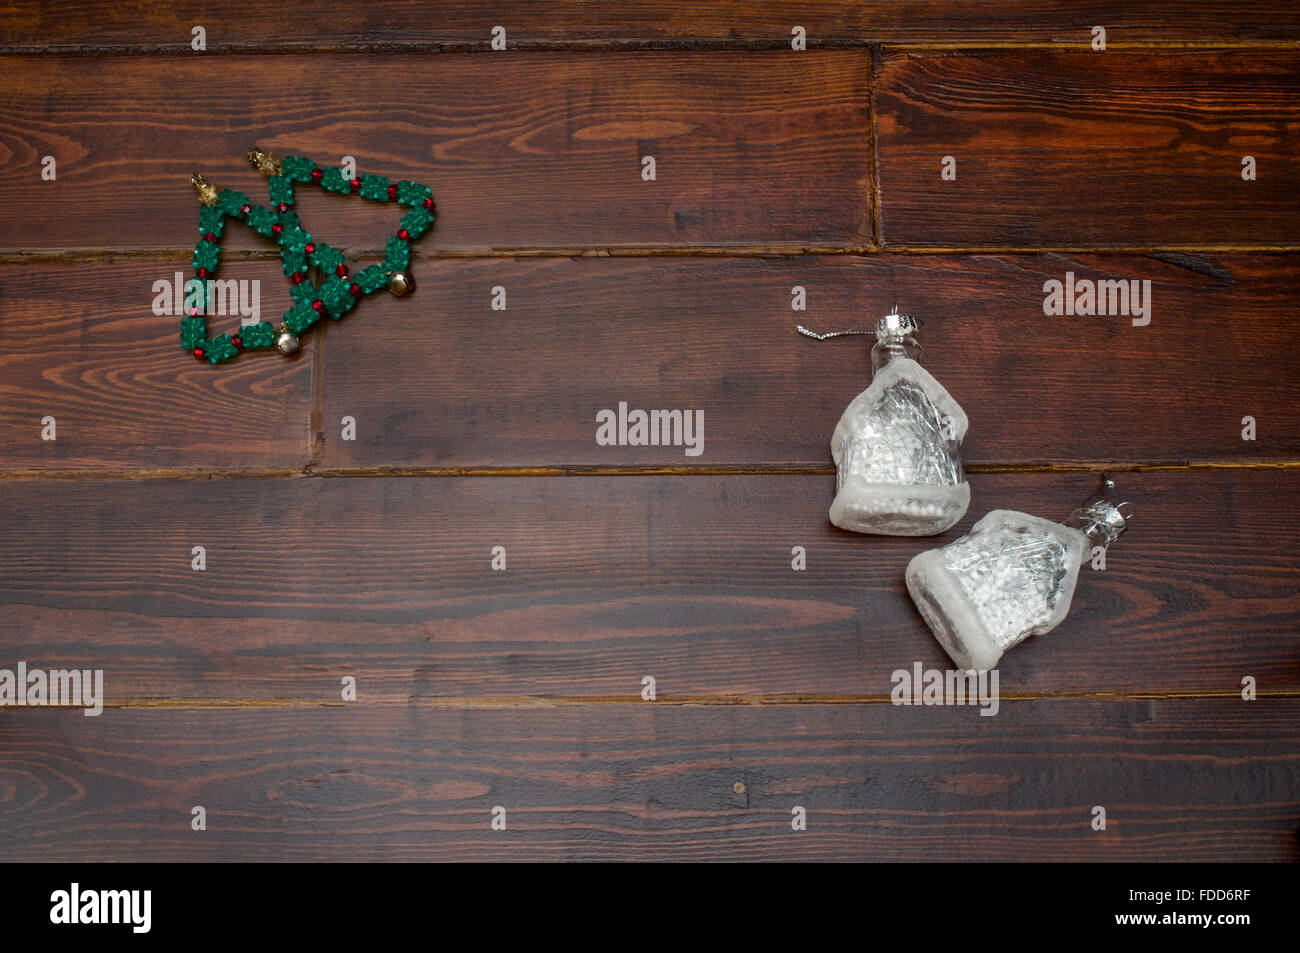 Arbre de Noël avec des cloches et des maisons de verre sur la table en bois Banque D'Images